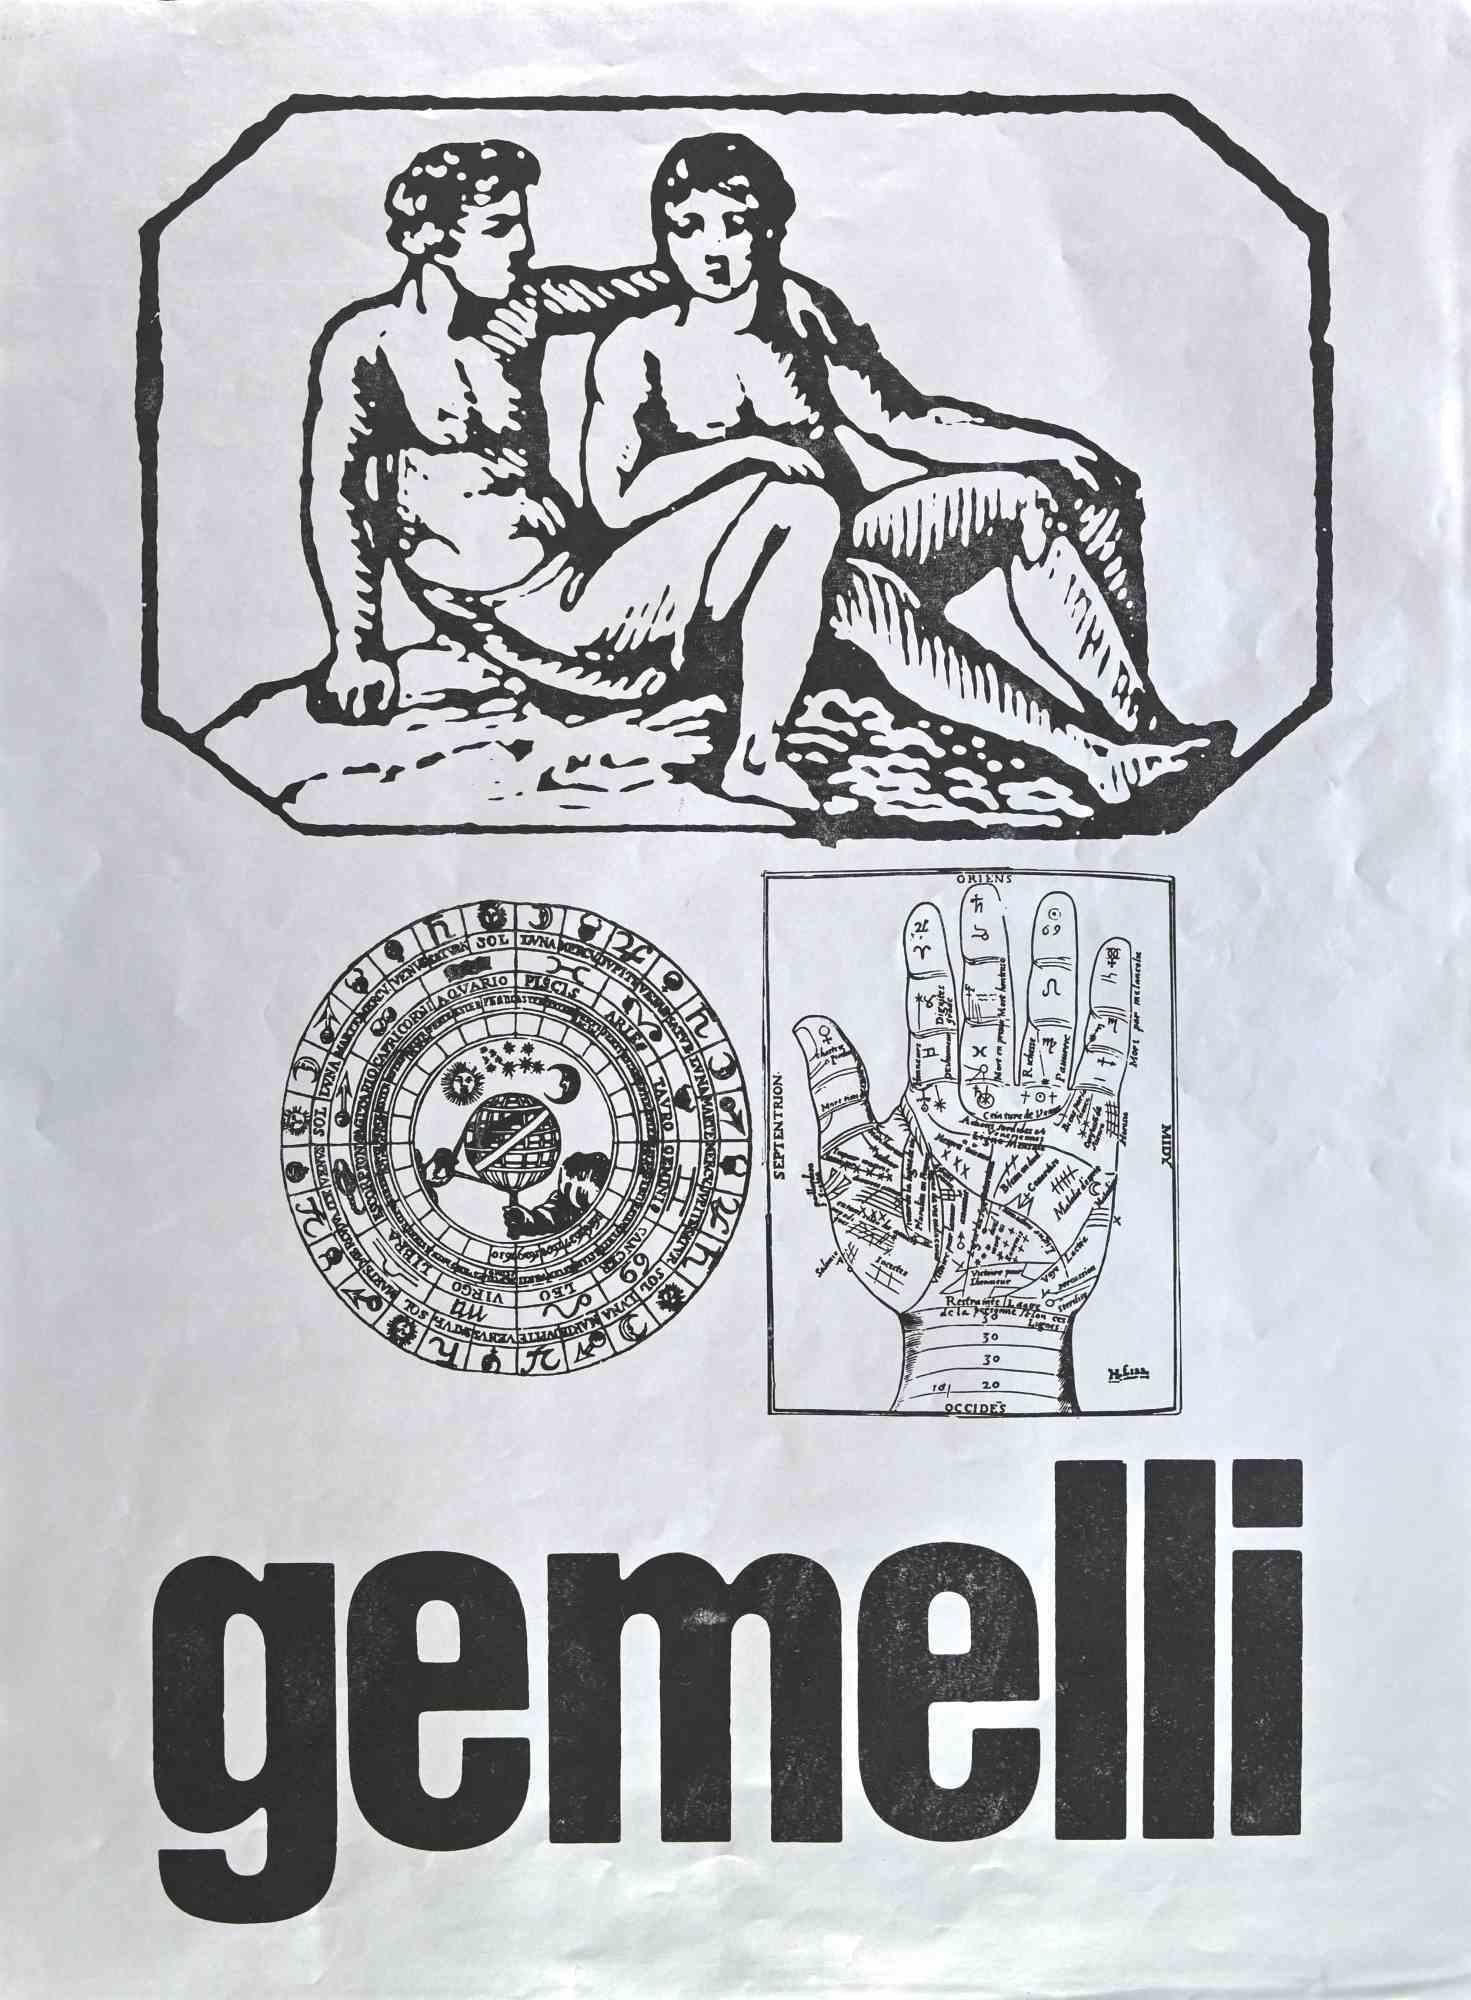 Gémeaux  est une sérigraphie sur papier gris réalisée par  Sergio Barletta en 1973. 

68 x 49 cm.

Bonnes conditions !

 

Sergio Barletta  (1934) est un dessinateur et illustrateur italien qui a également publié des livres d'humour et de satire